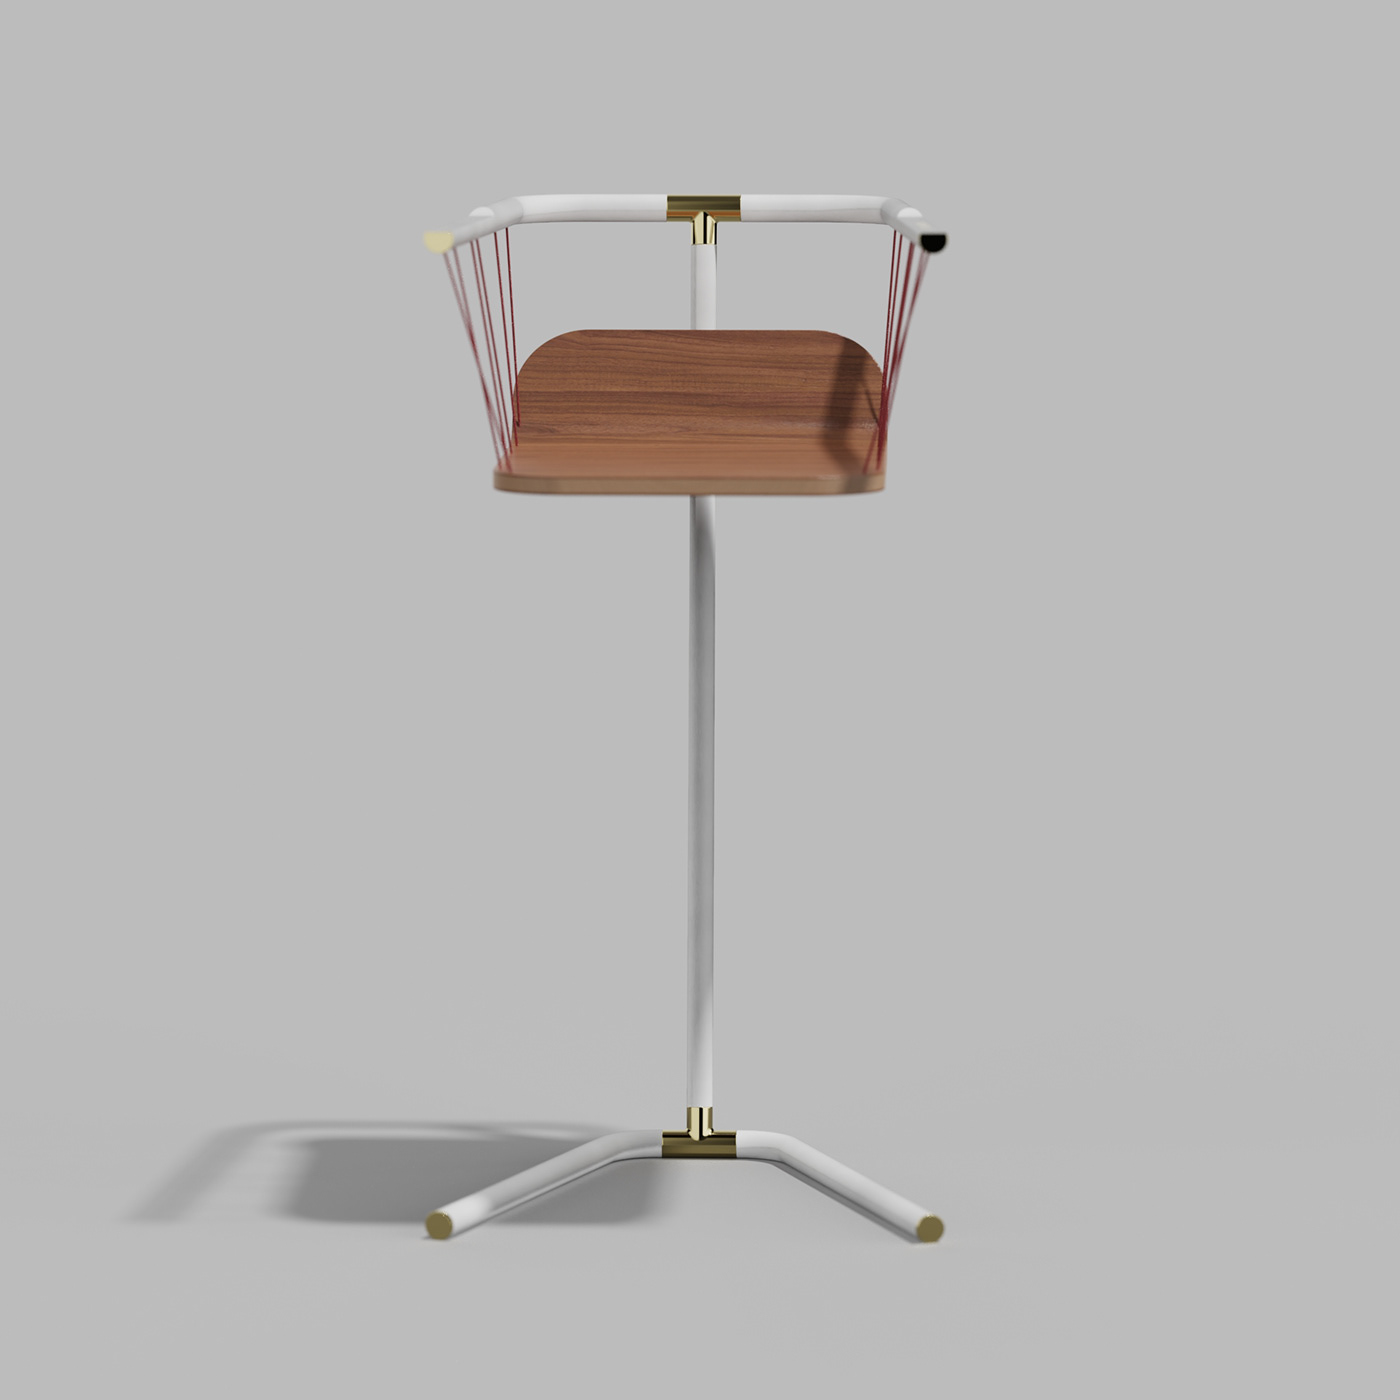 furniture concept furniture design  keyshot levitating levitation stool stool concept Stool Design taburete tamboret